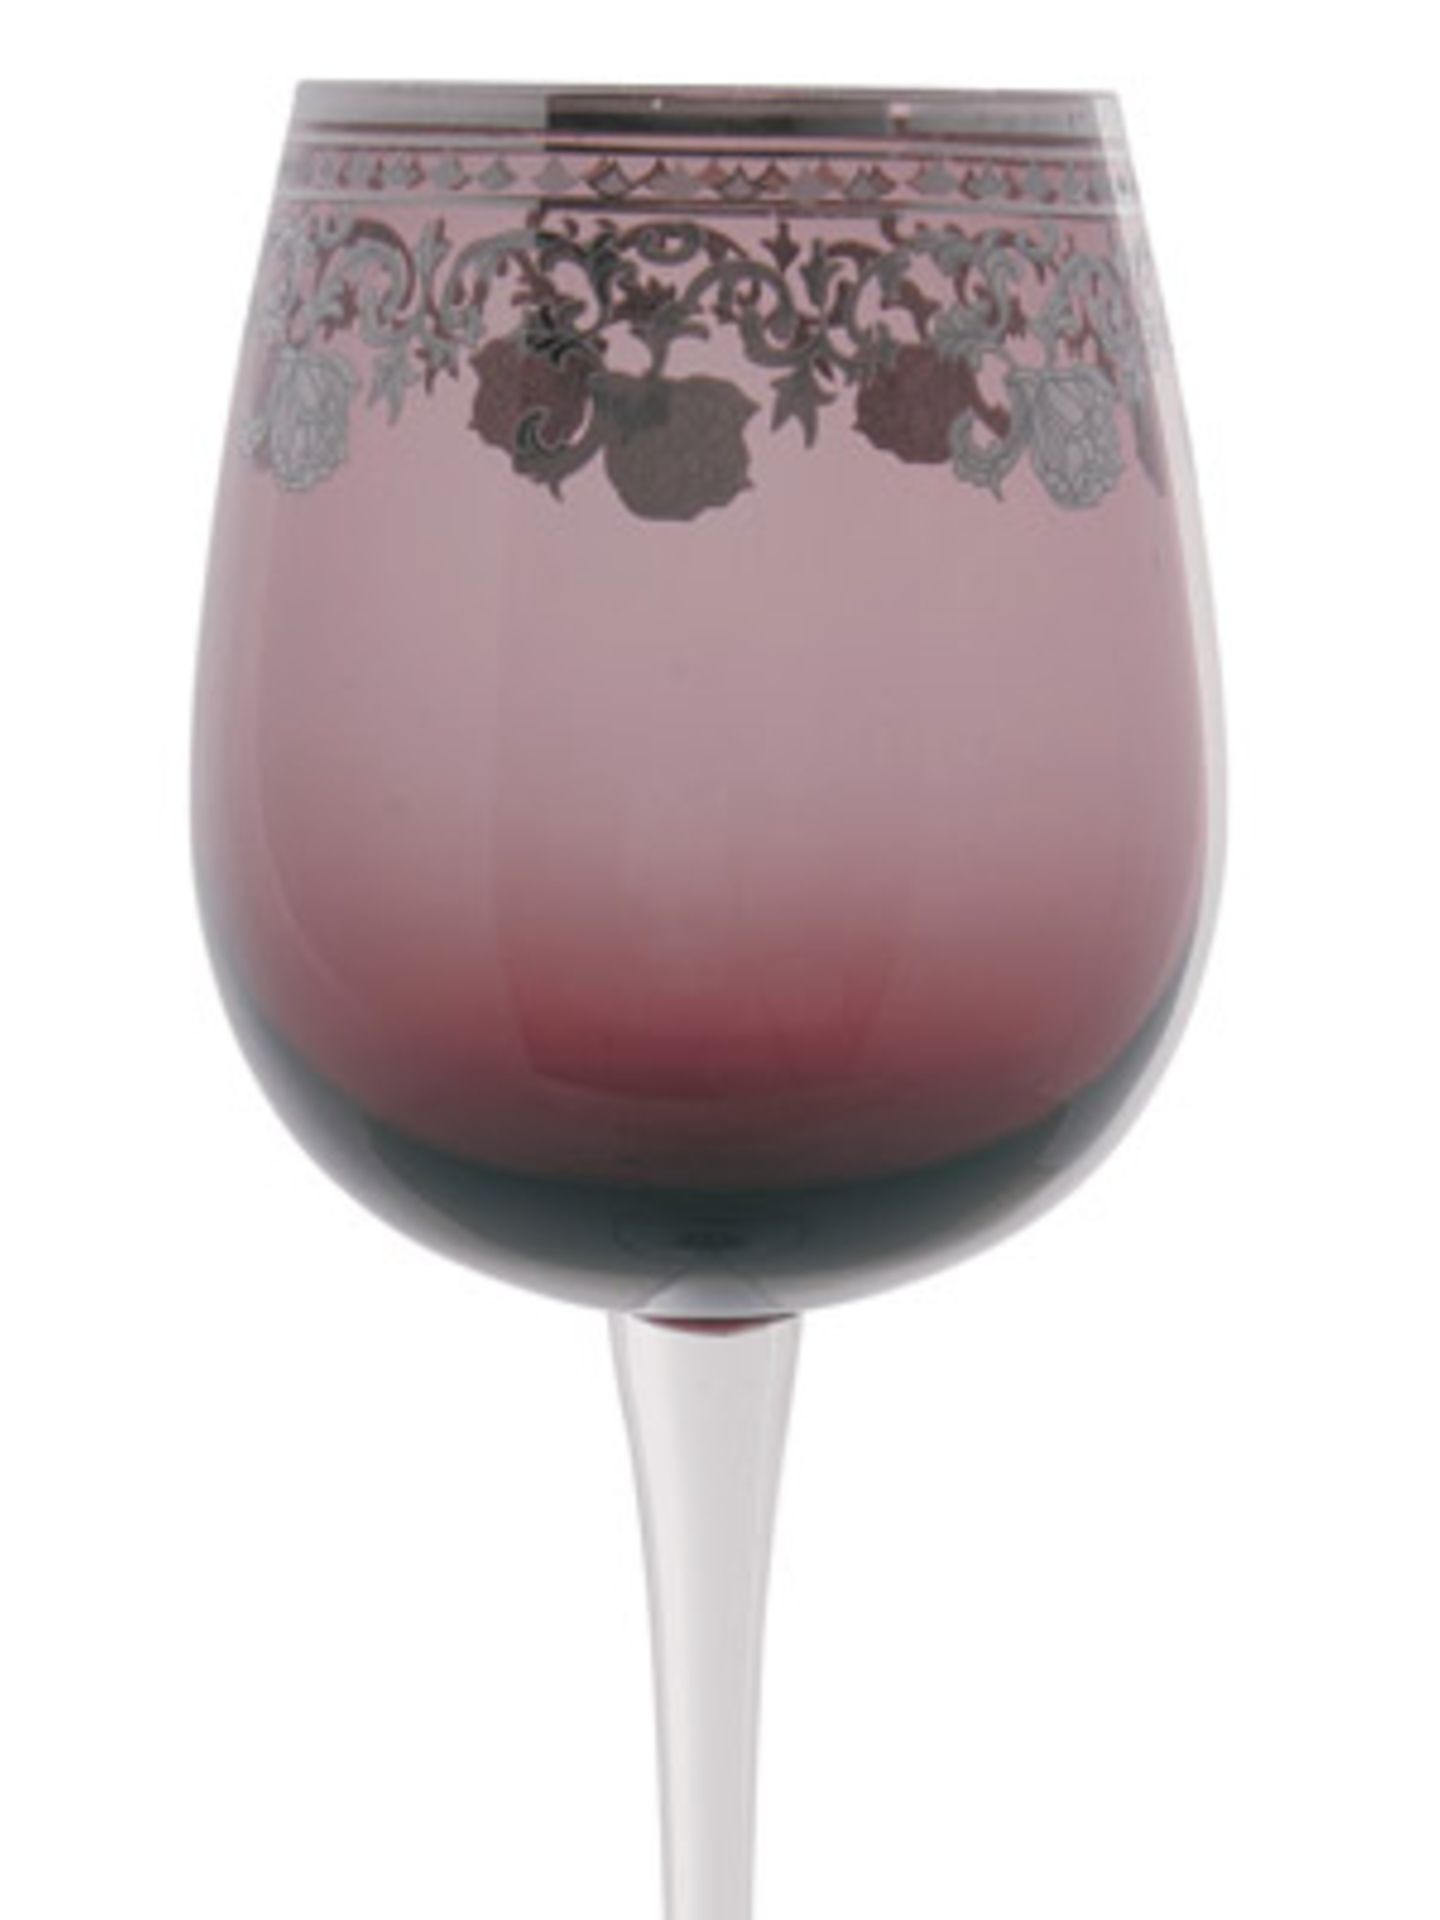 Ein Gläschen Rotwein im Bett? Warum denn nicht! Stilvoll mit diesen wunderschönen Gläsern, pro Stück ca. 9 Euro bei www.kare-design.de